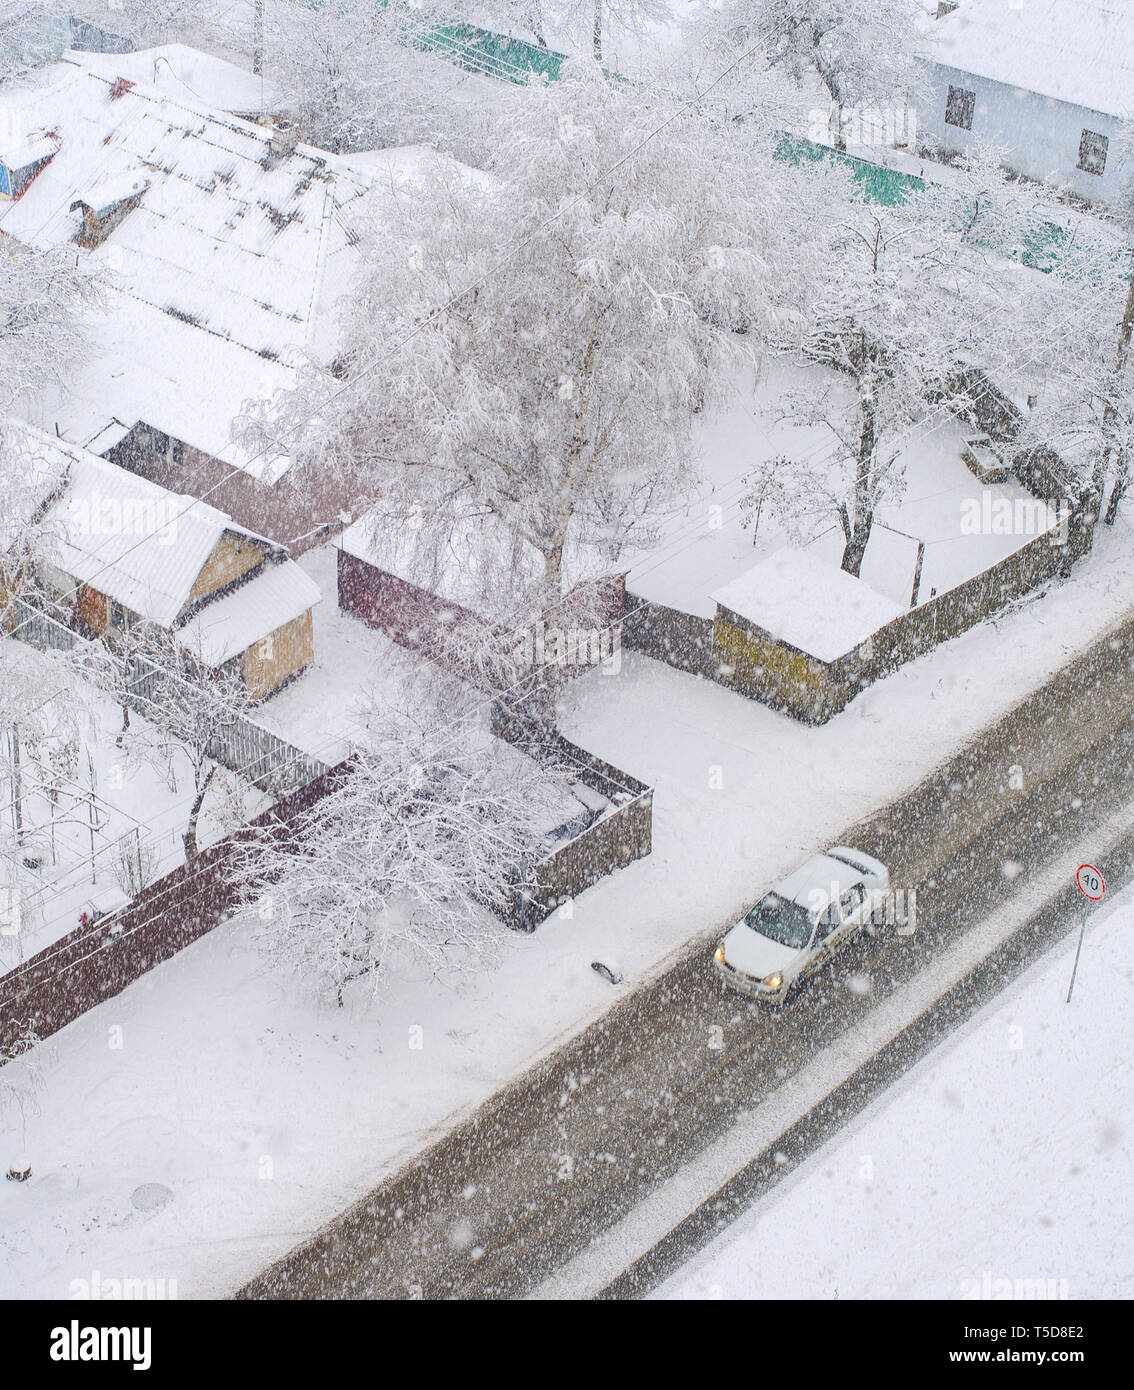 Luftaufnahme von Wohngebiet mit dem Auto auf der Straße und der privaten Häuser in schneefall Wintertag, Kiew, Ukraine Stockfoto